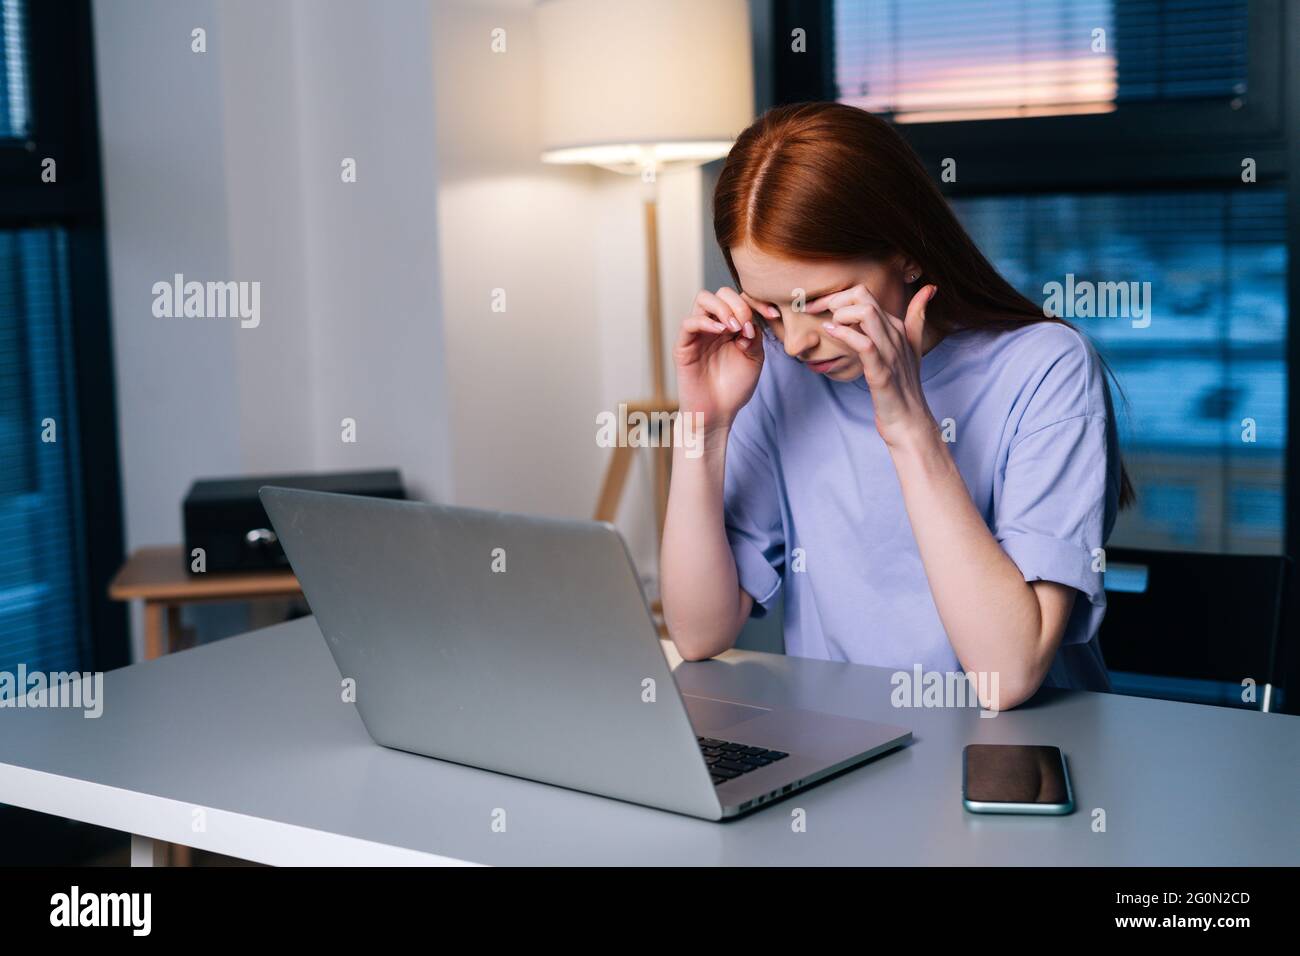 Müde junge Frau freiberuflich arbeiten auf Laptop reiben Augen Gefühl Beschwerden Schmerzen im Home Office spät am Abend. Stockfoto